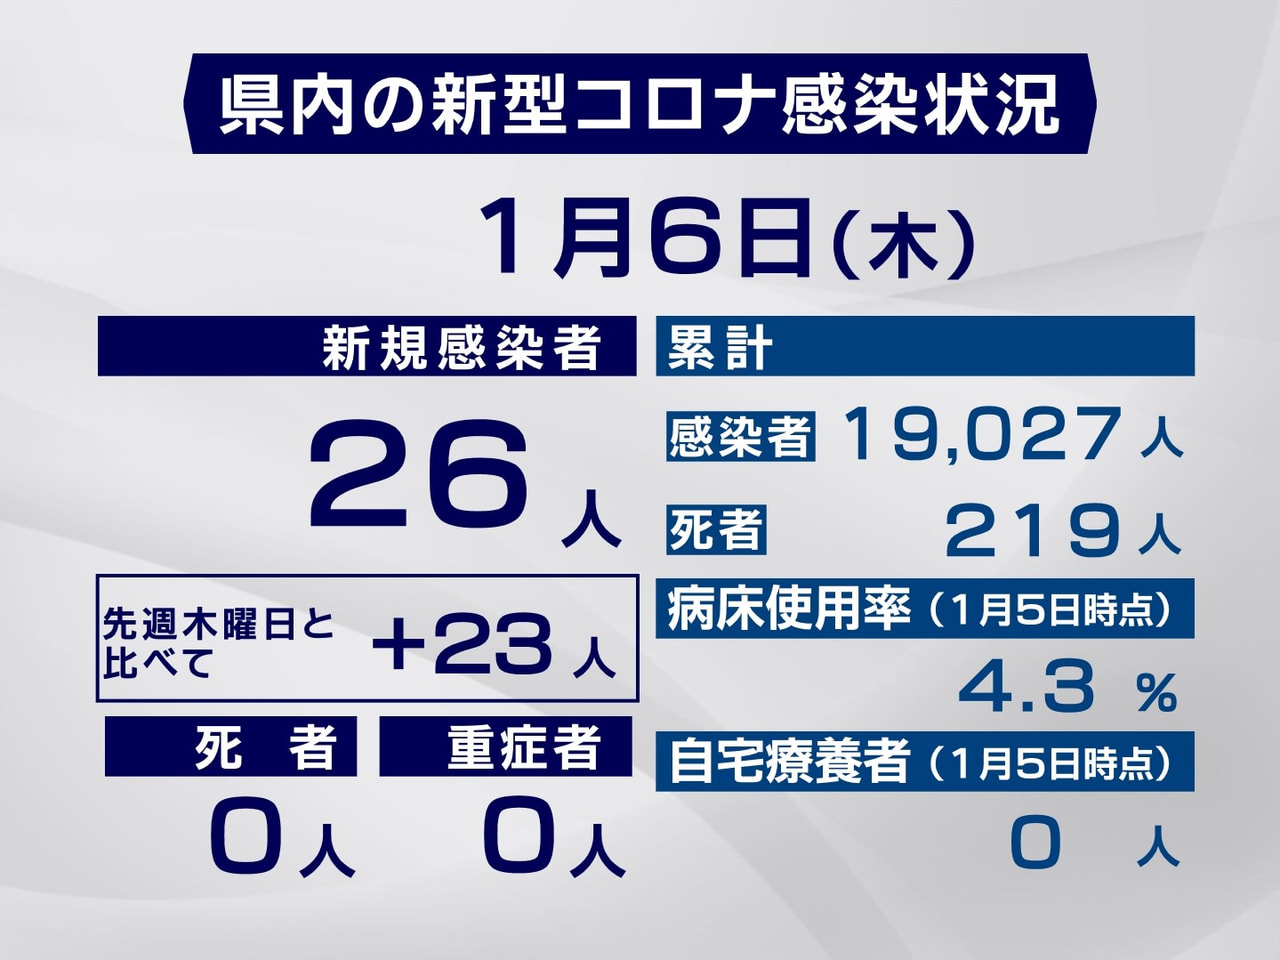 岐阜県は６日、新型コロナウイルスの新たな感染者が２６人確認されたと発表しました。...